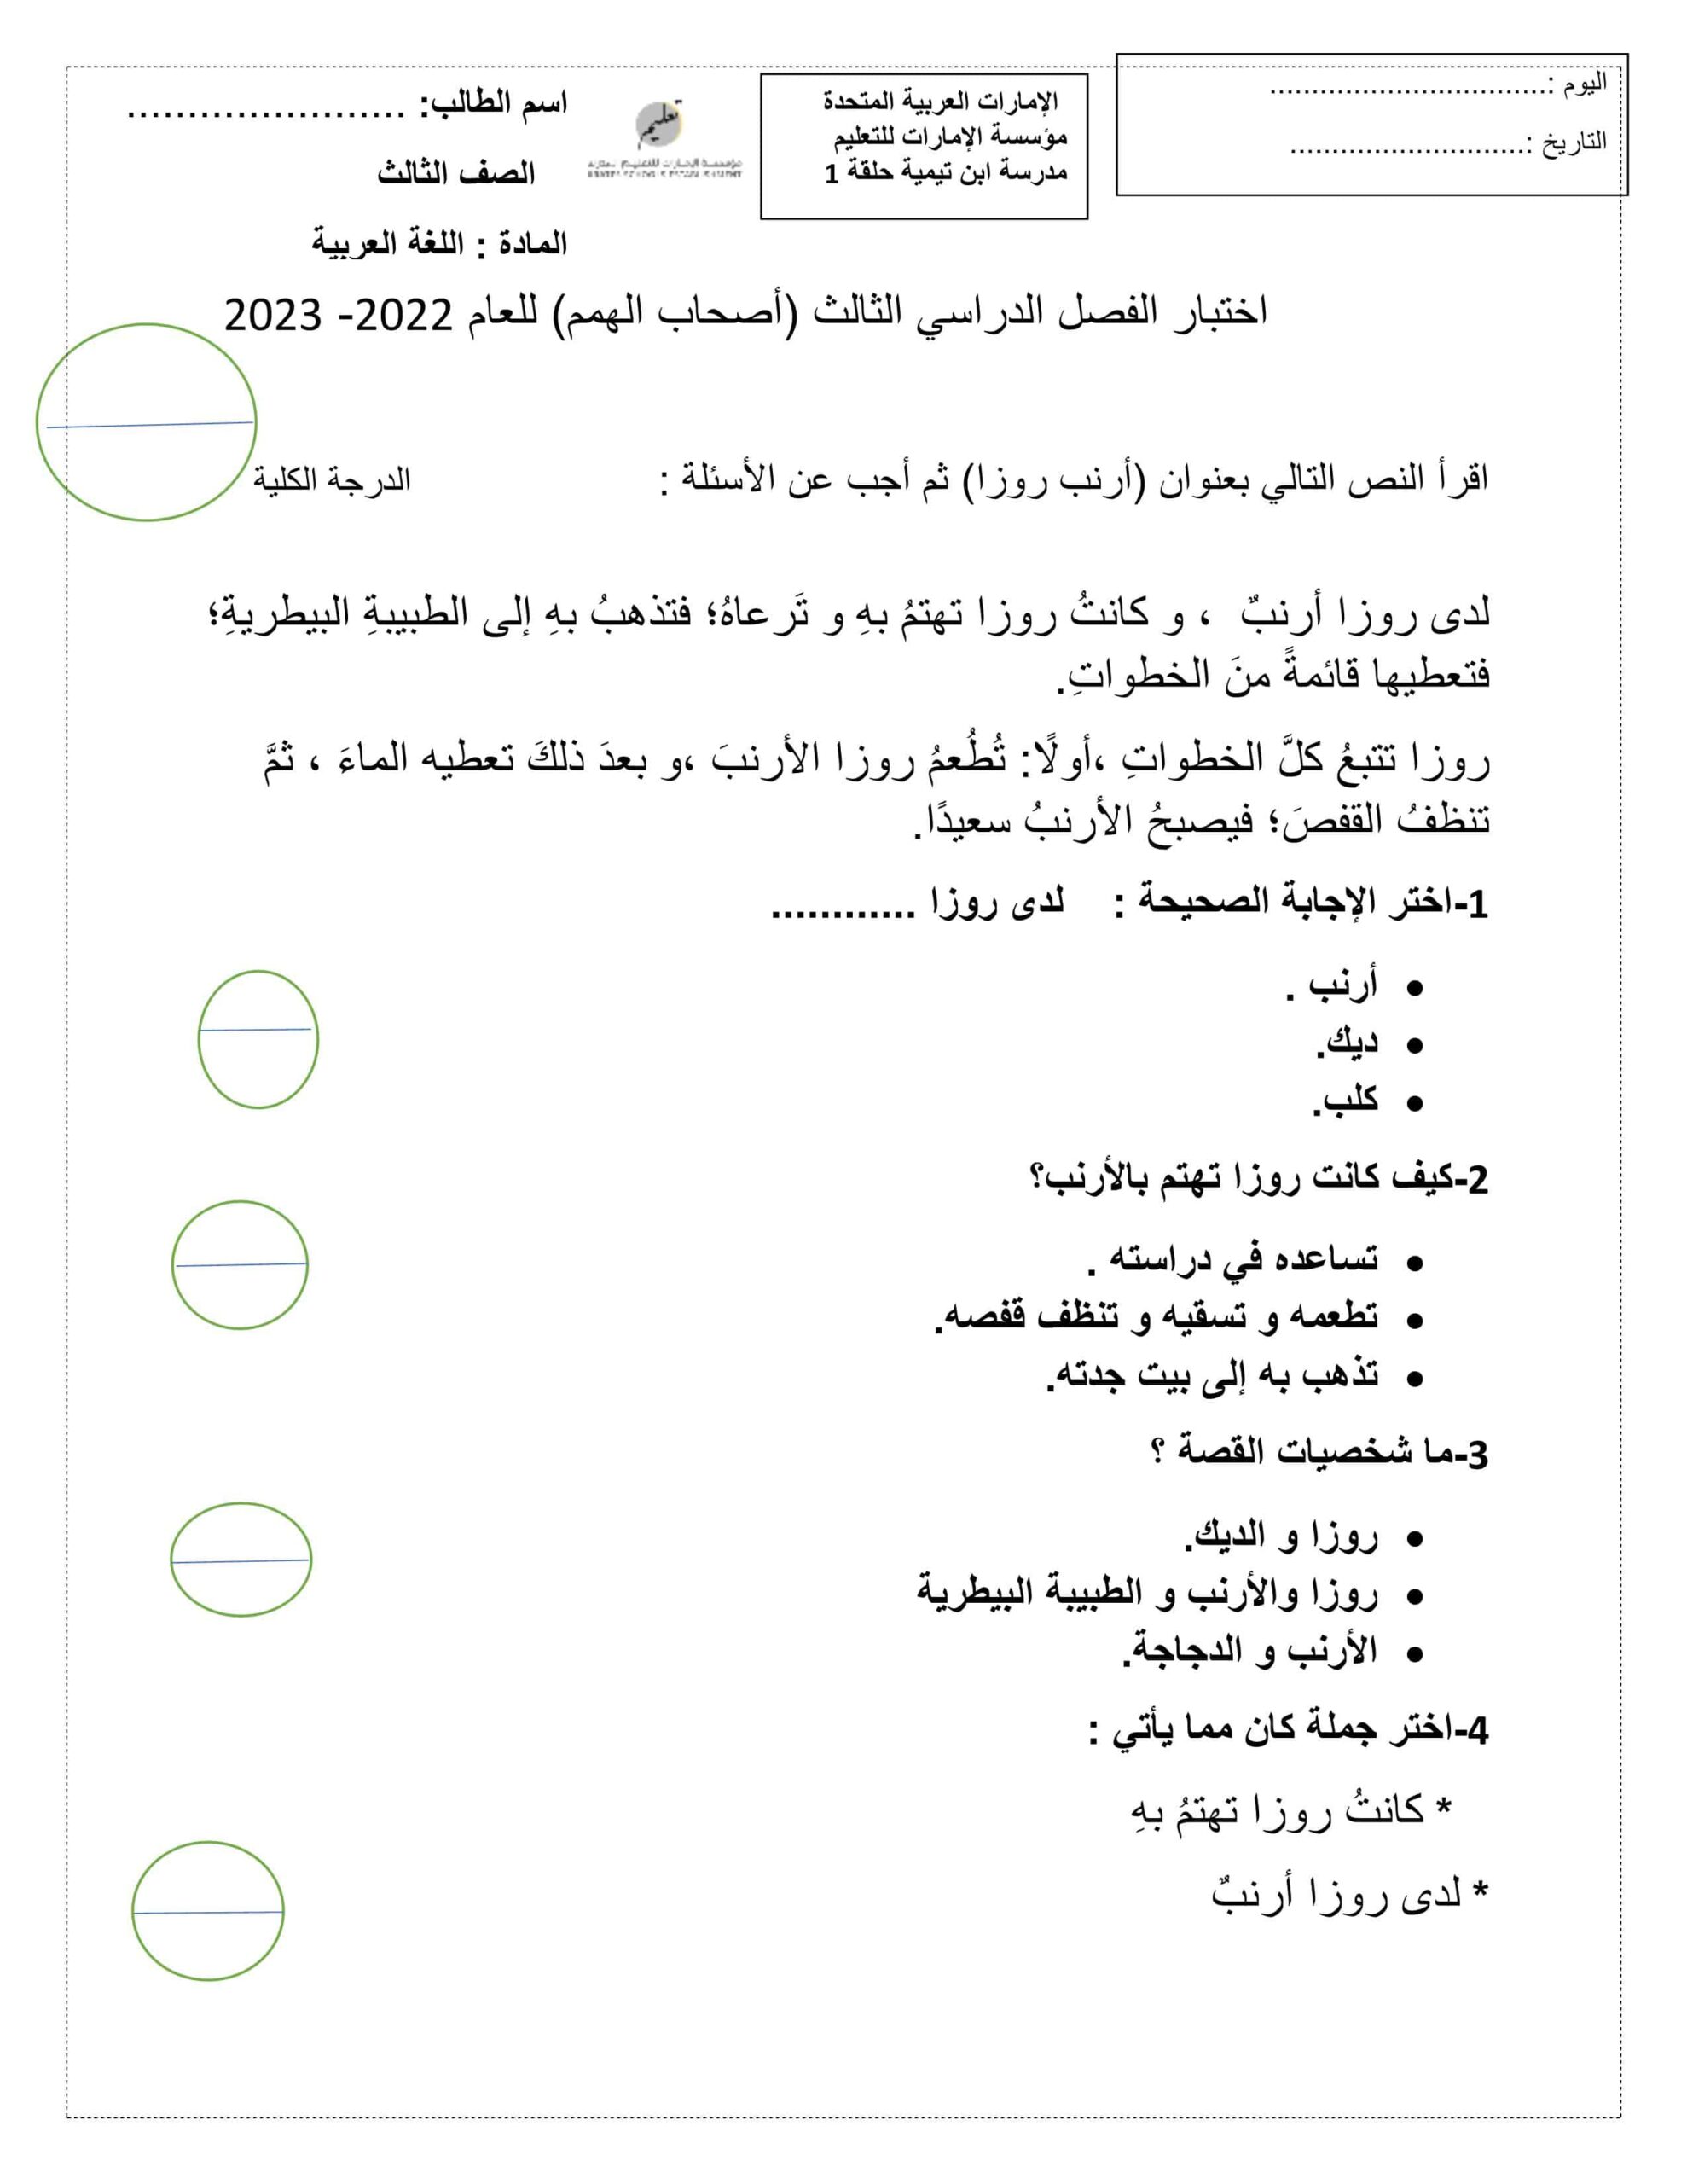 اختبار الفصل الدراسي الثالث لأصحاب الهمم اللغة العربية الصف الثالث 